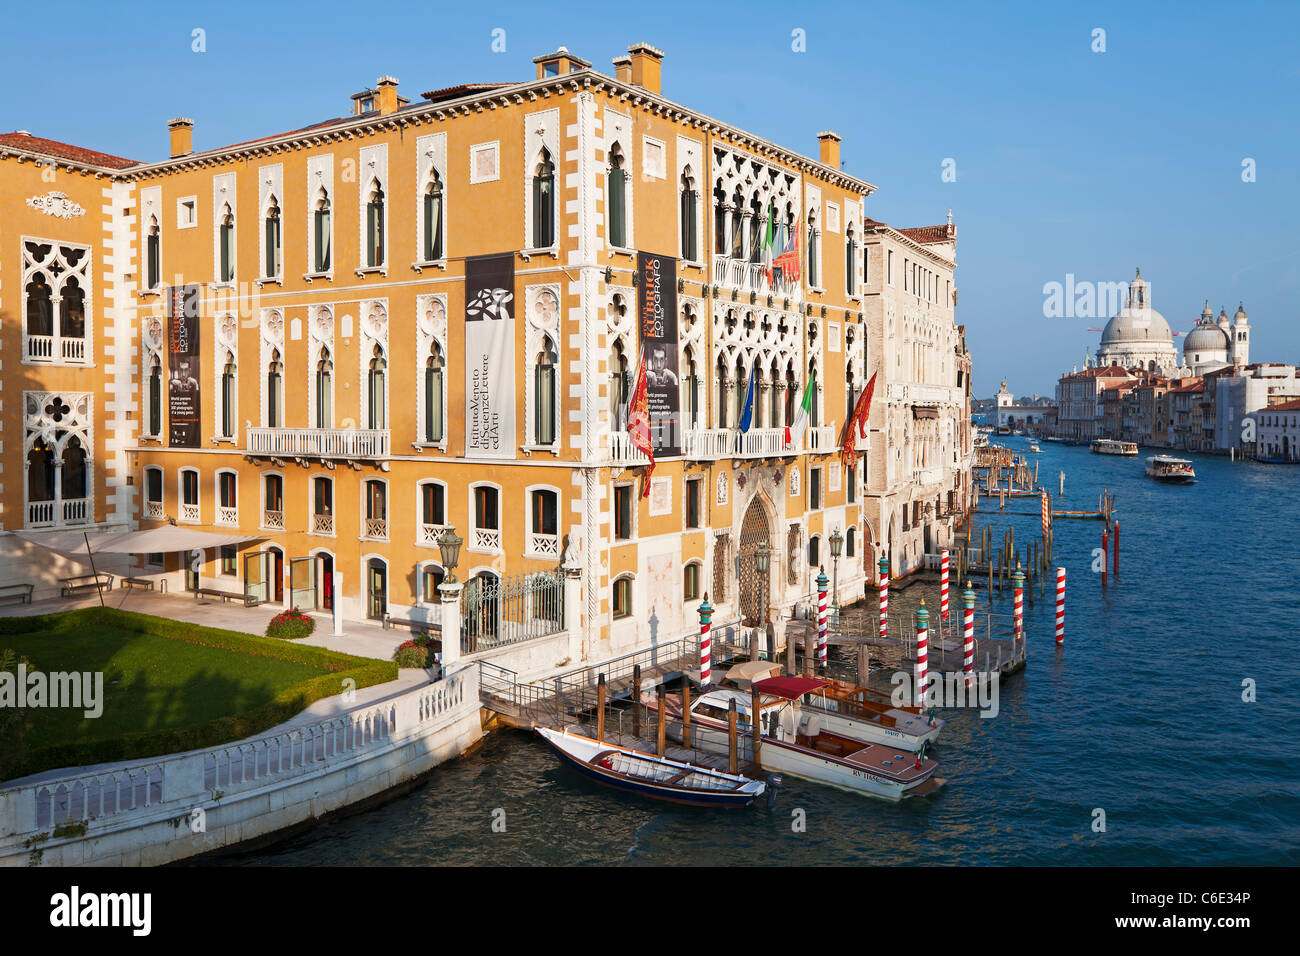 I taxi d'acqua passando Palazzo Cavalli-Franchetti, Grand Canal, Venezia, Veneto, Italia Foto Stock